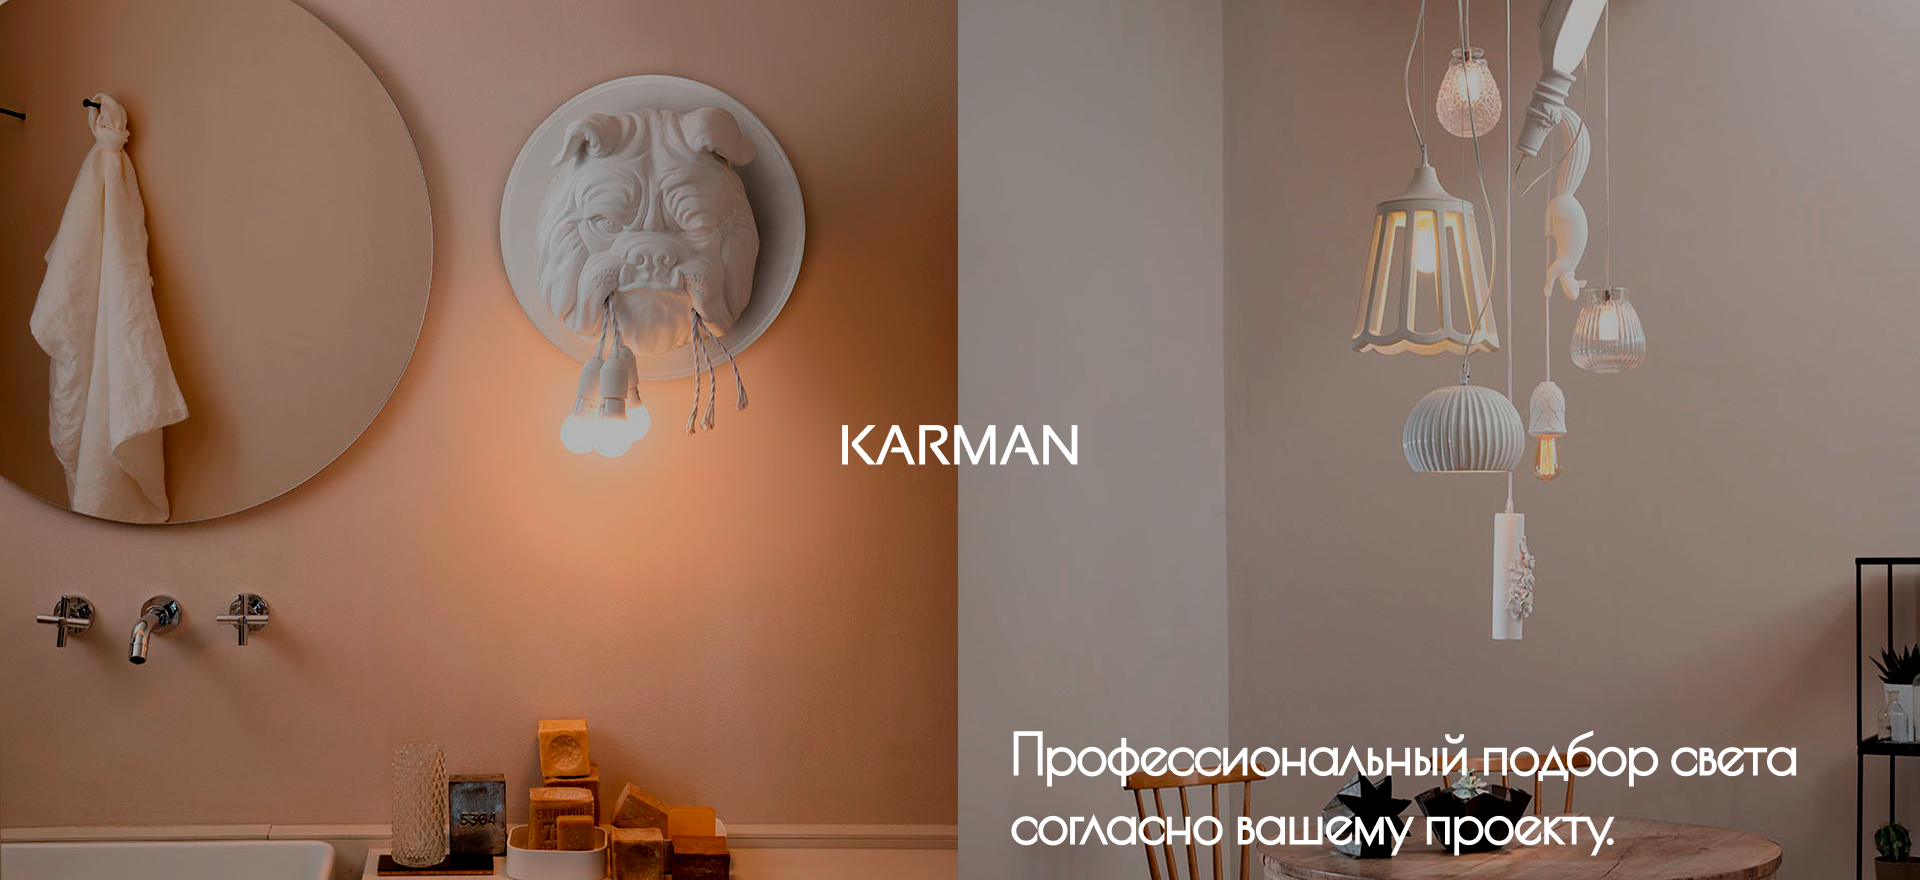 KARMAN_new